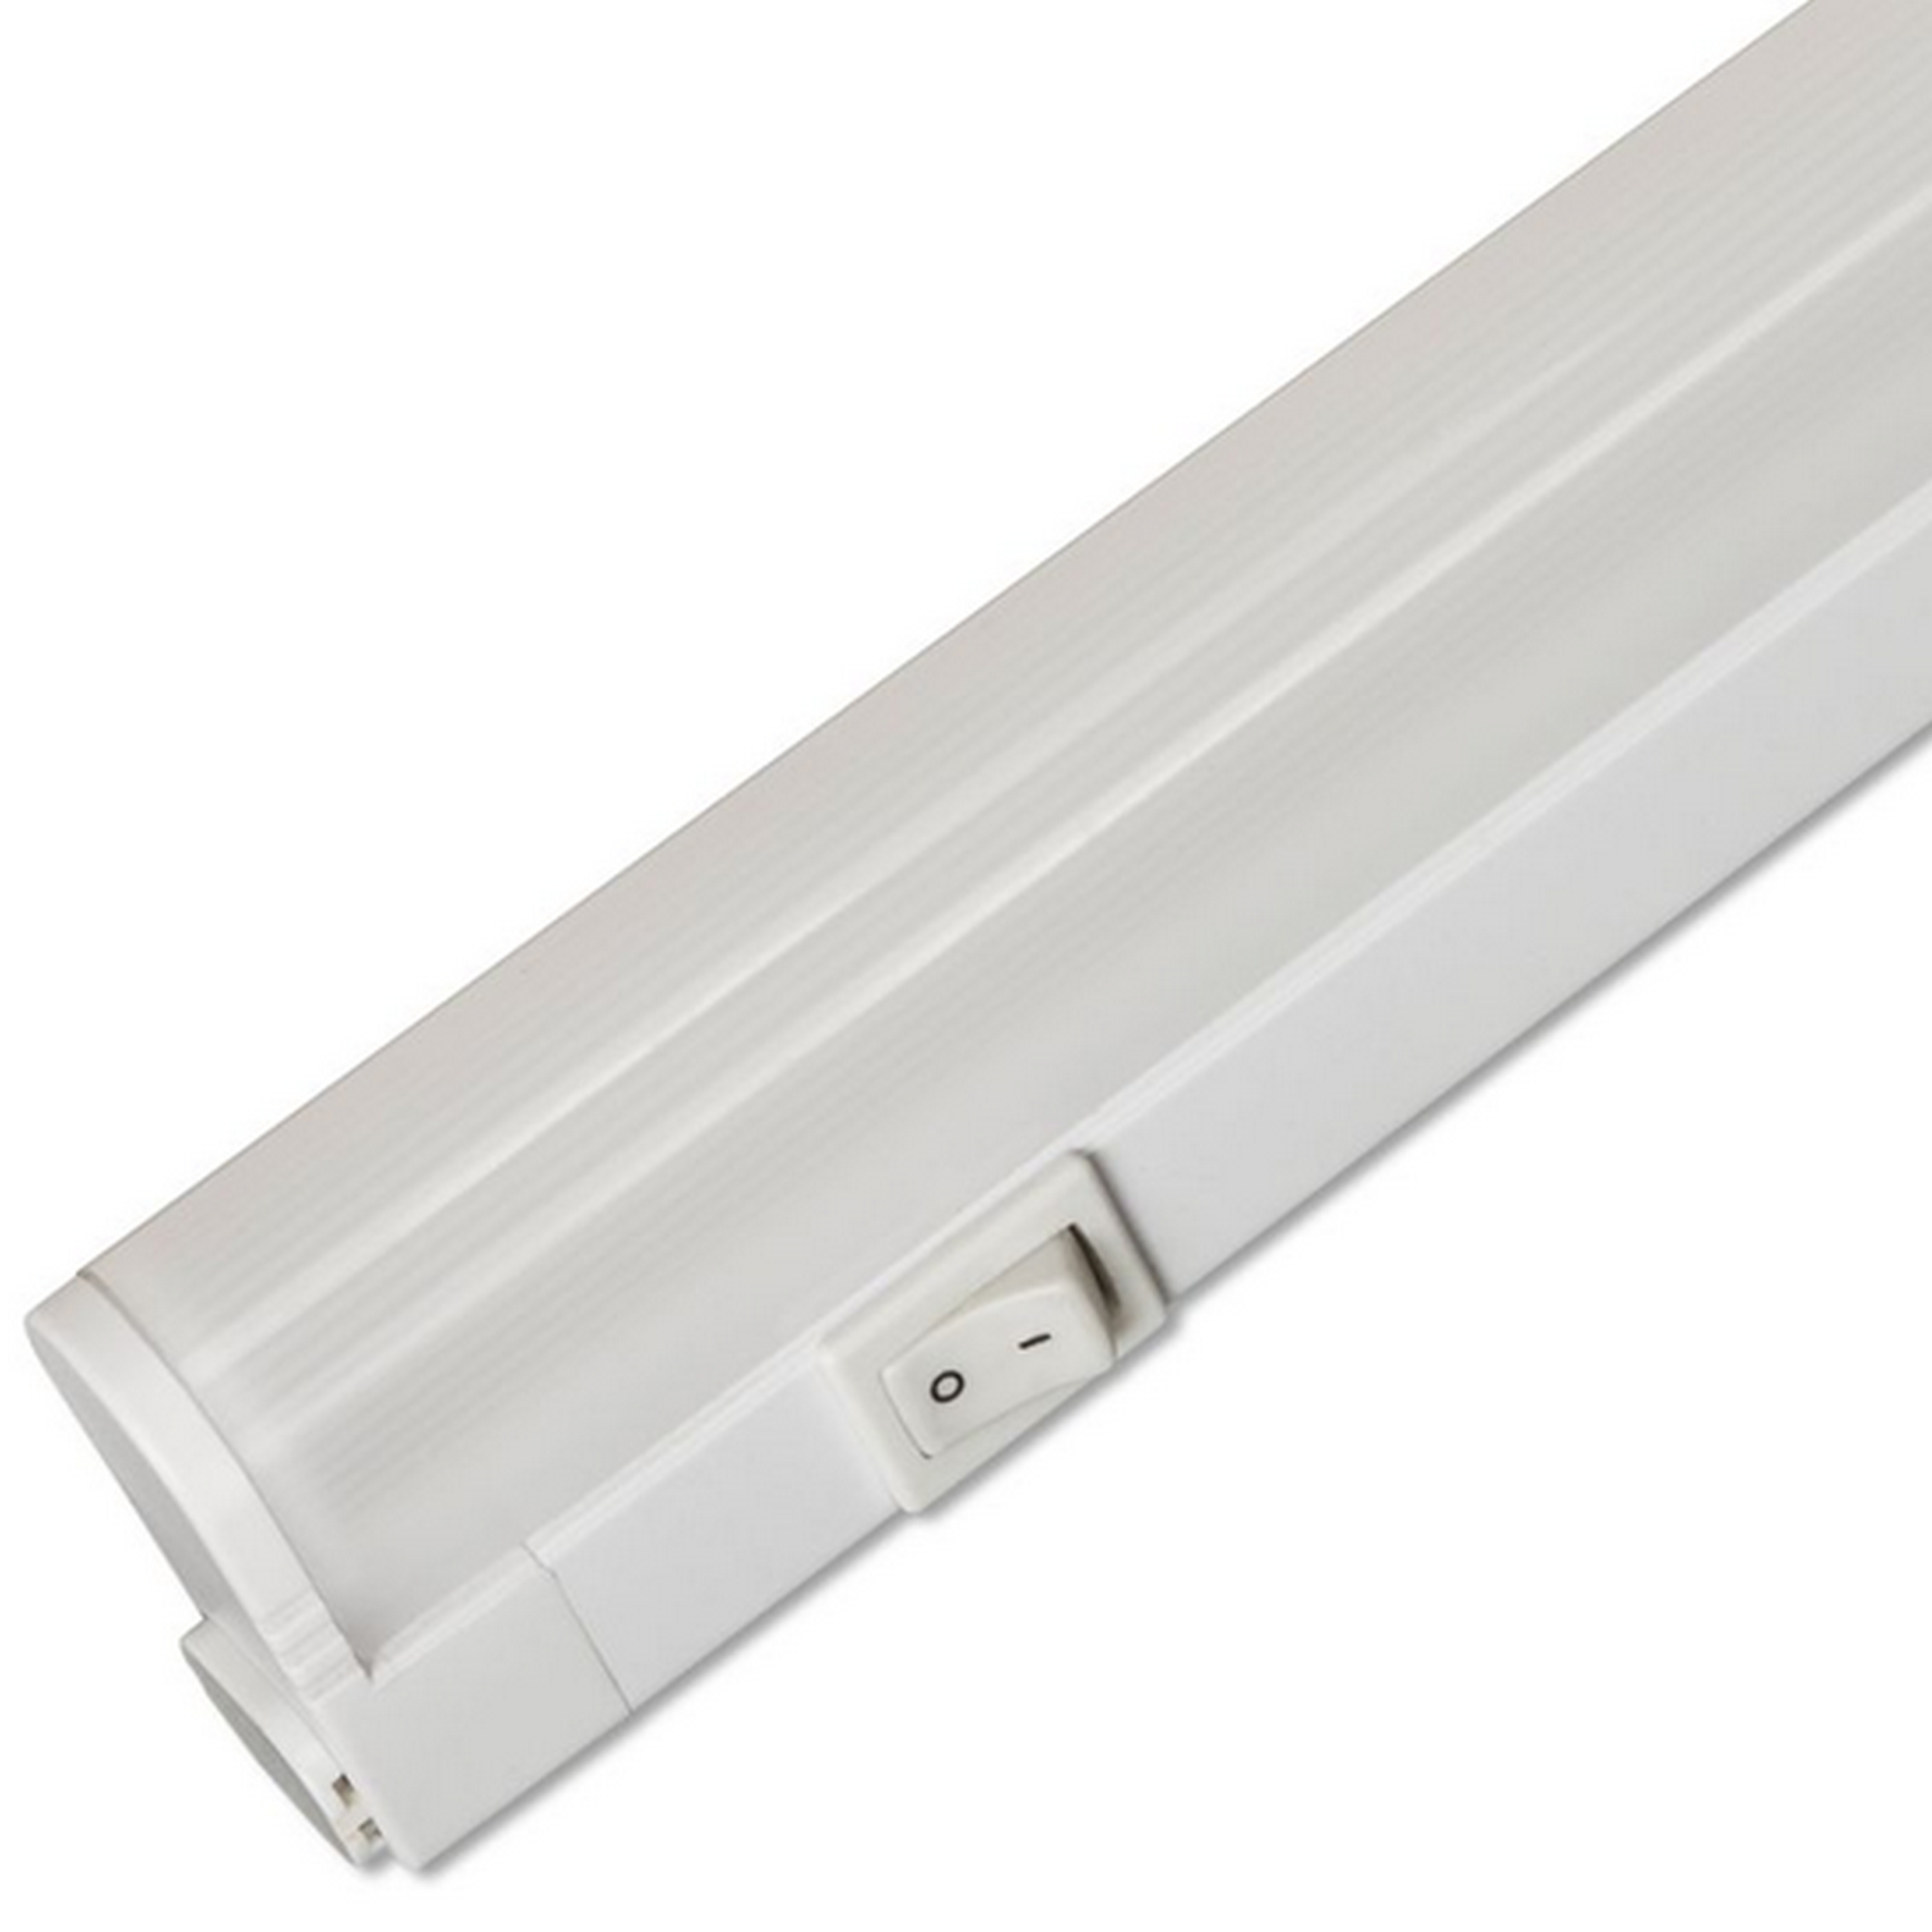 Linex Switch Tone' 30 LED-Unterbauleuchte 4 W 28 cm + product picture